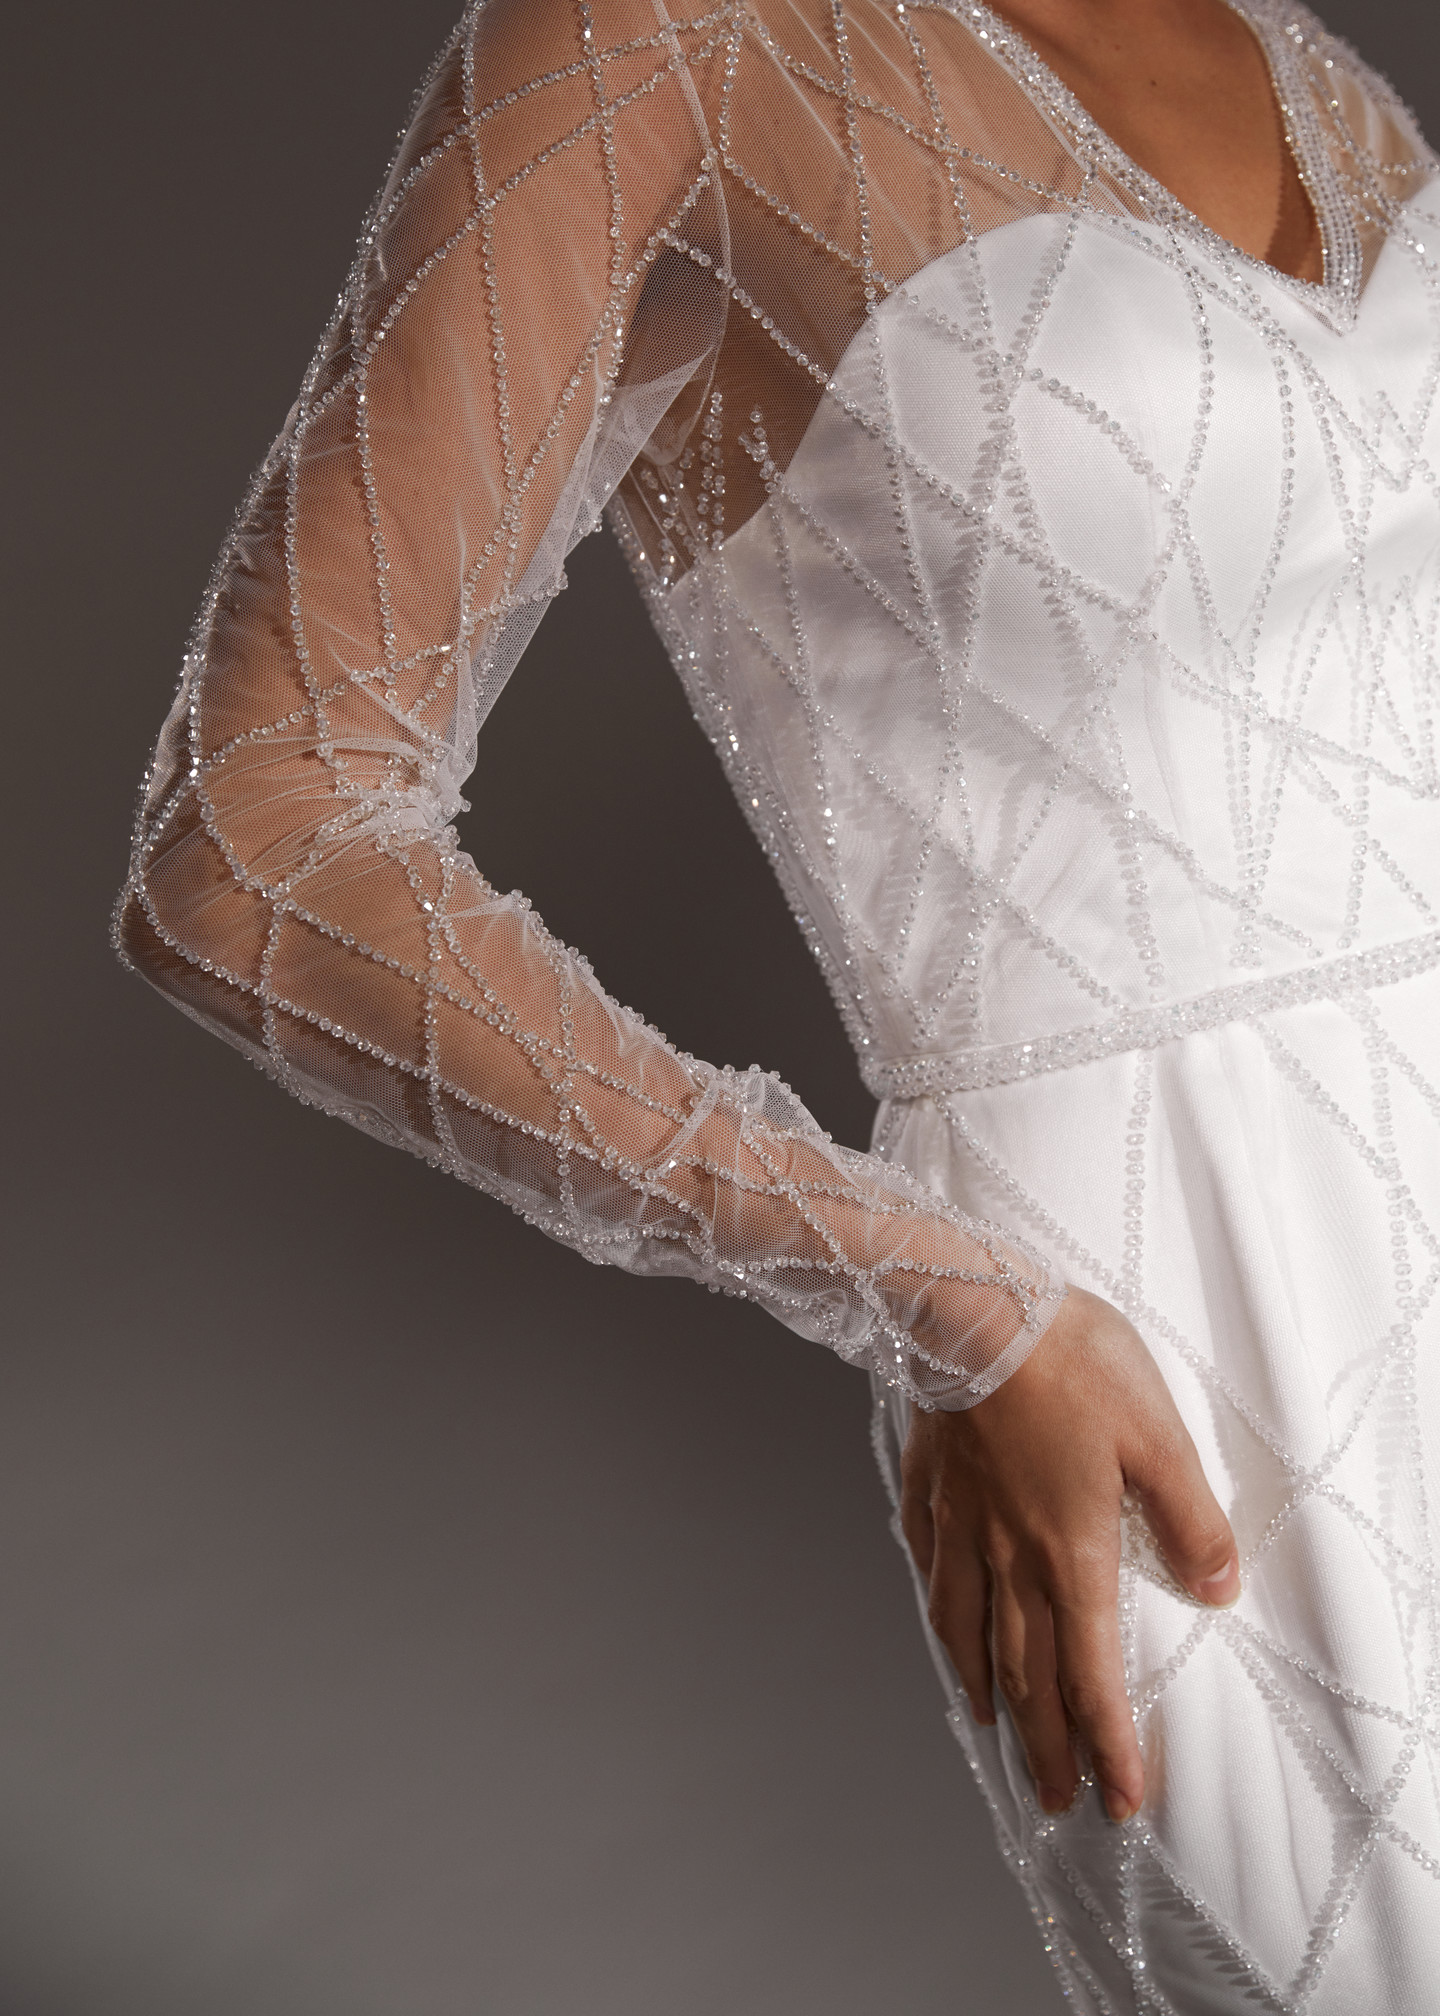 Платье Селеста, 2019, одежда, платье, свадебное, молочно-белый, вышивка, рукава, прямой силуэт, популярное